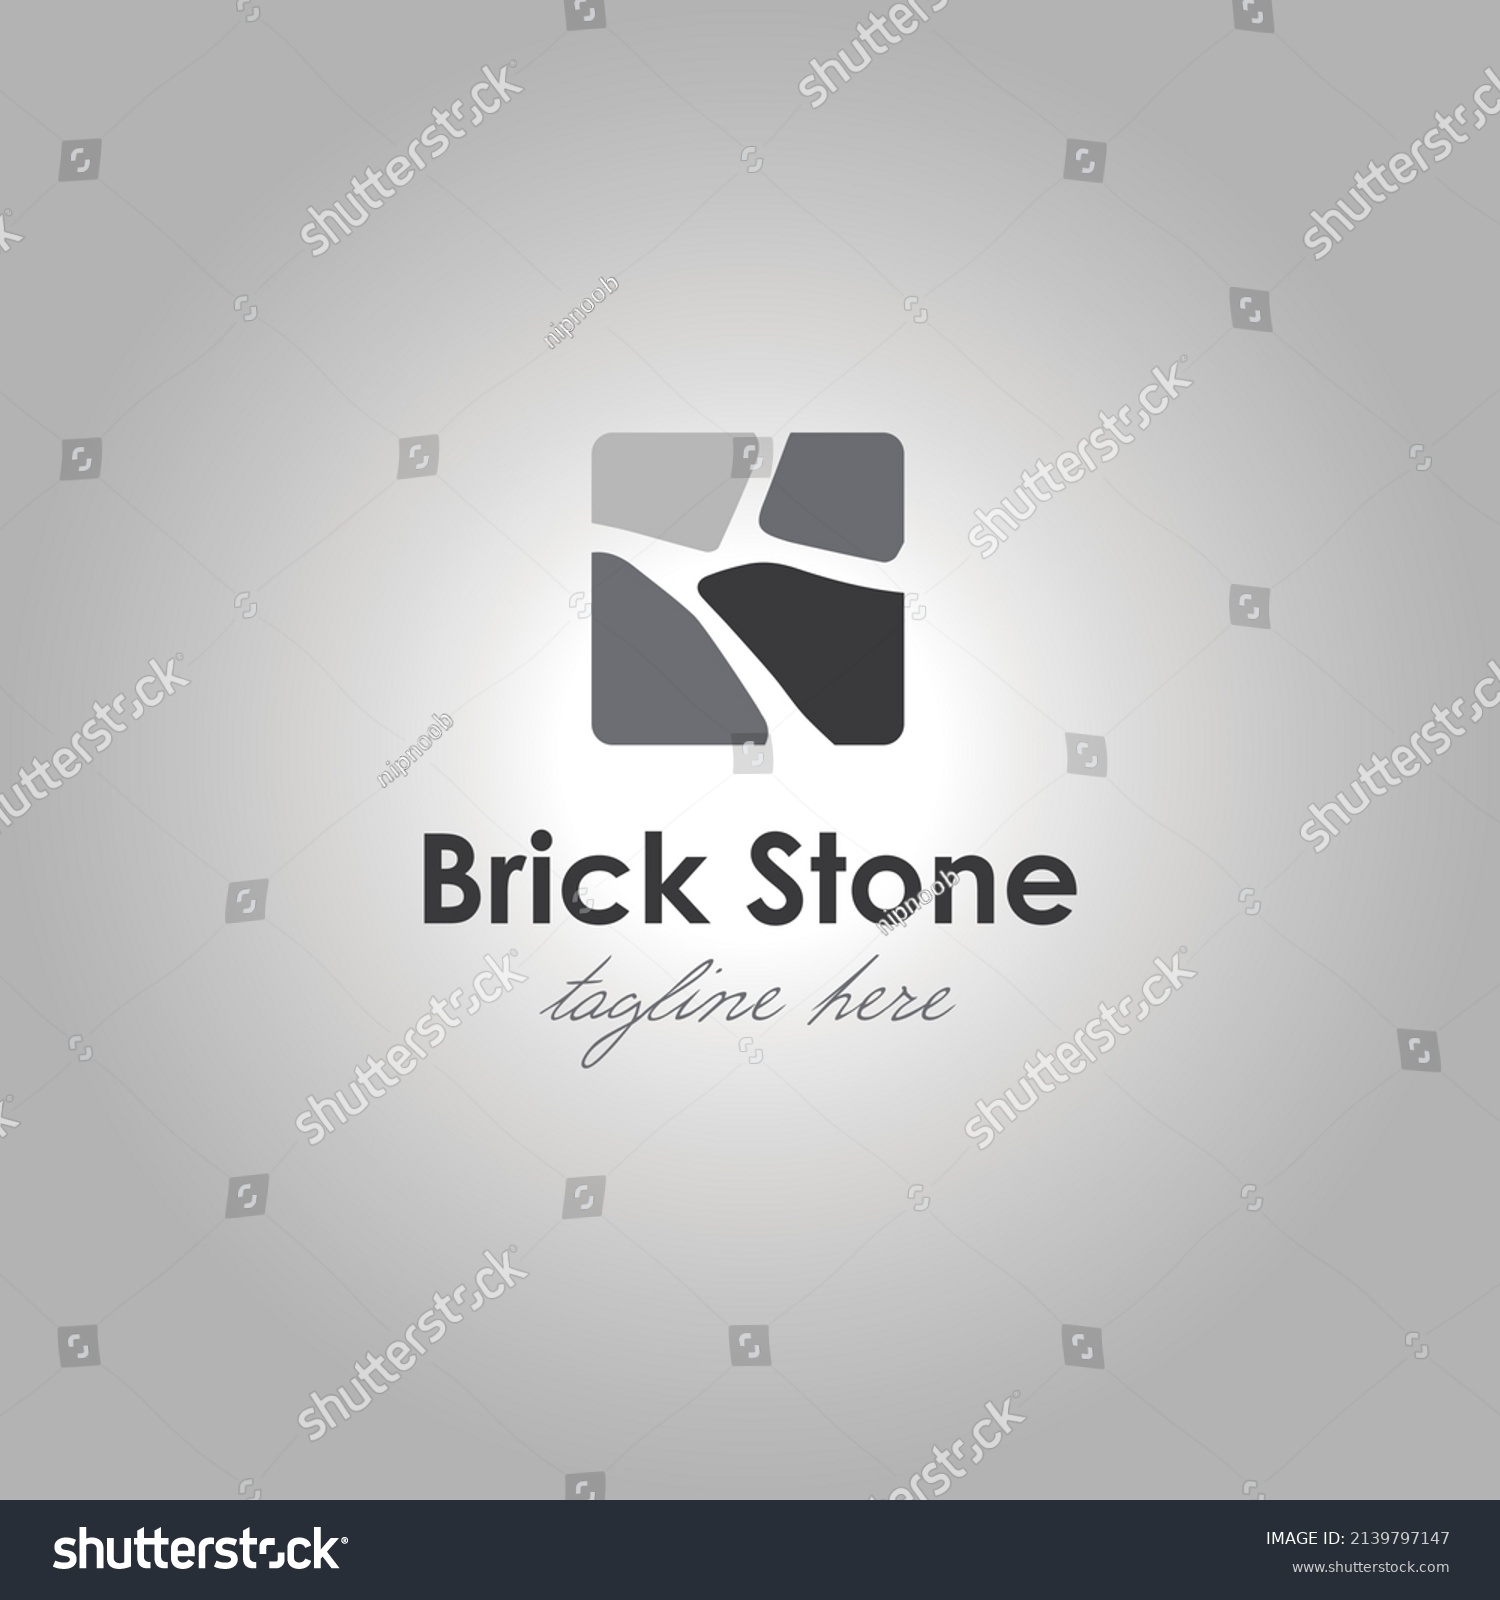 Brick Stone Logo Vector Design Template Stock Vector (Royalty Free ...